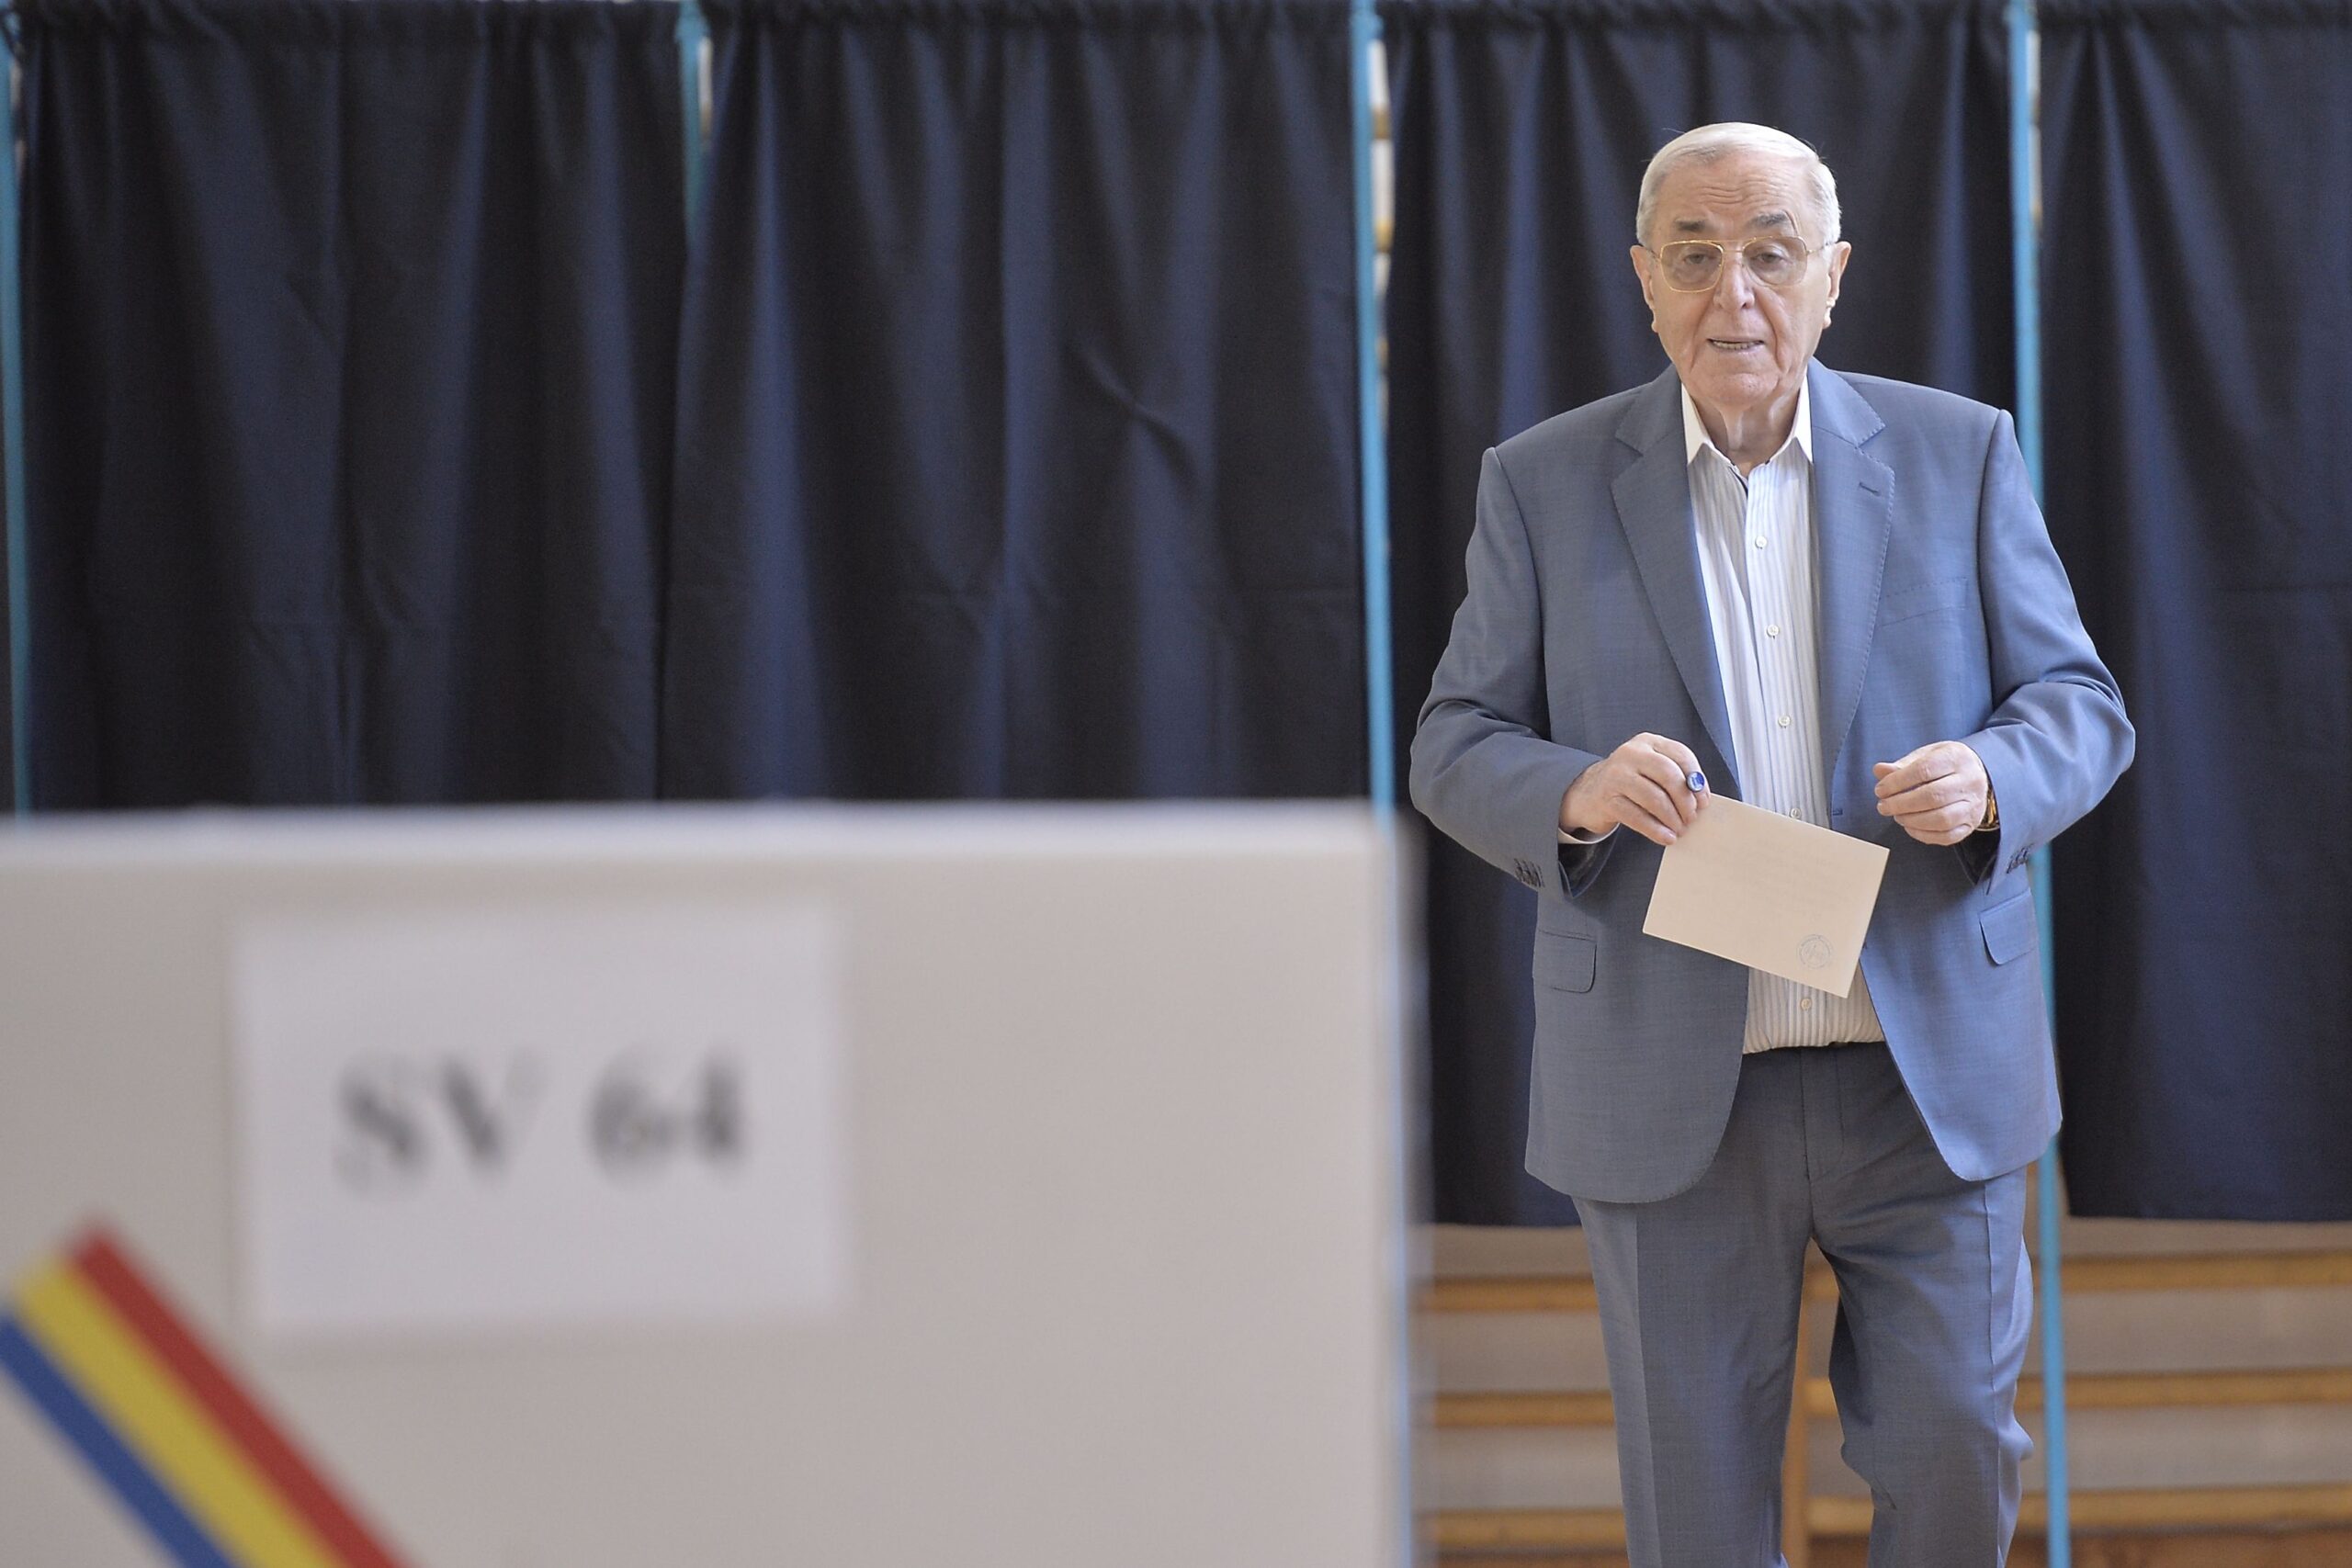 Viorel Paunescu voteaza la referendumul pentru redefiniriea familiei sambata, 6 octombrie 2018,  la sectia de votare nr. 64 din incinta Liceului Jean Monnet din Bucuresti. ANDREEA ALEXANDRU / MEDIAFAX FOTO